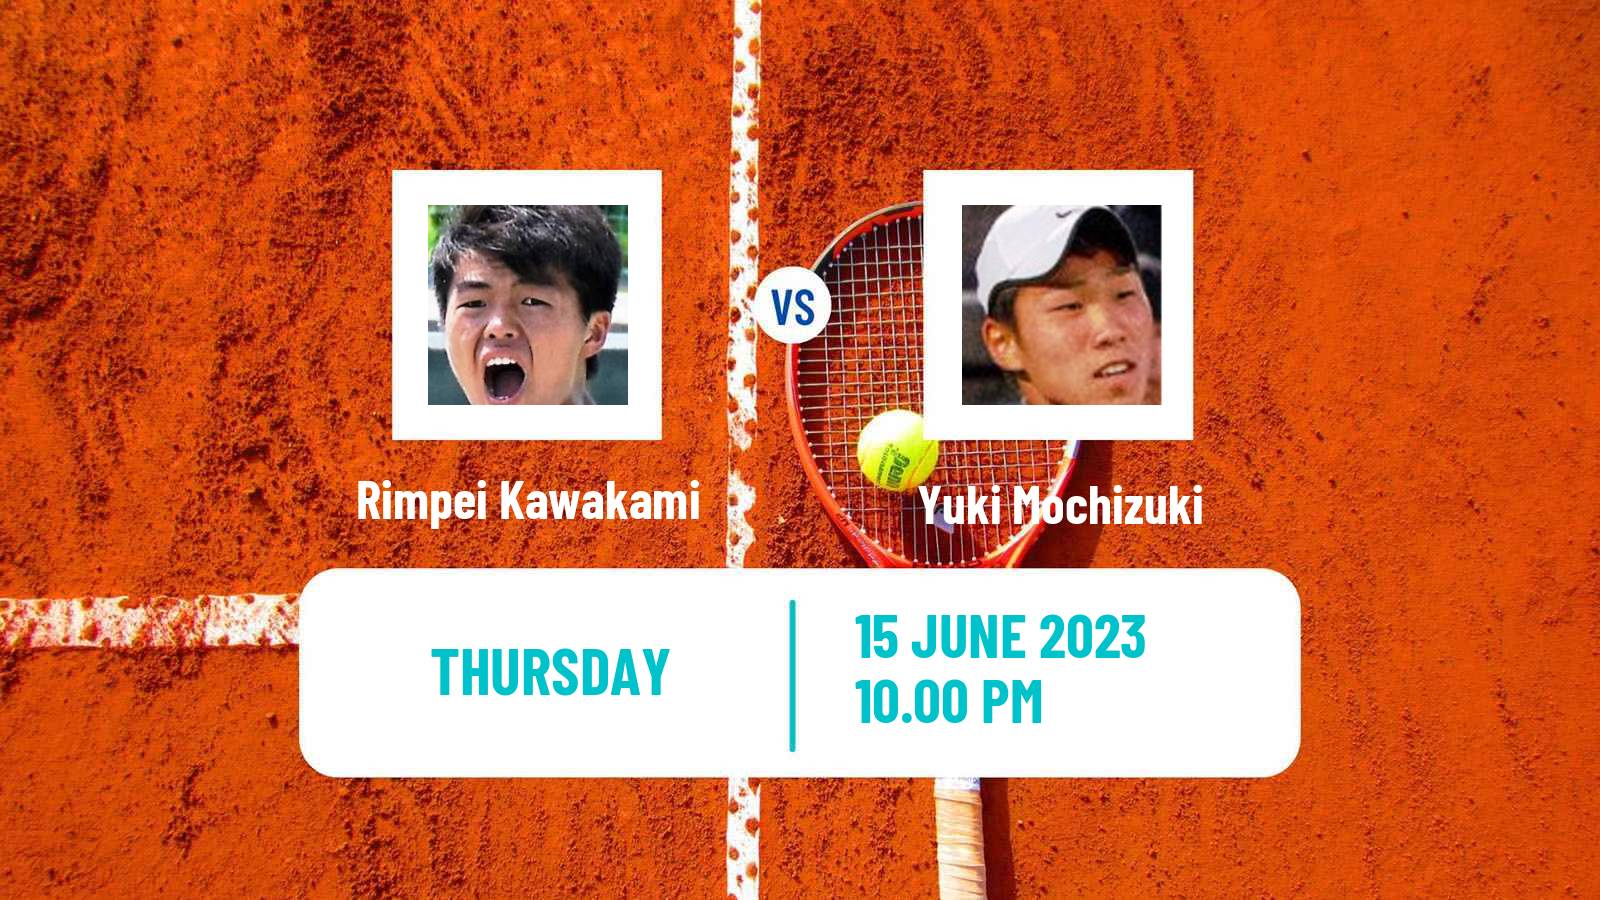 Tennis ITF M25 Changwon Men Rimpei Kawakami - Yuki Mochizuki